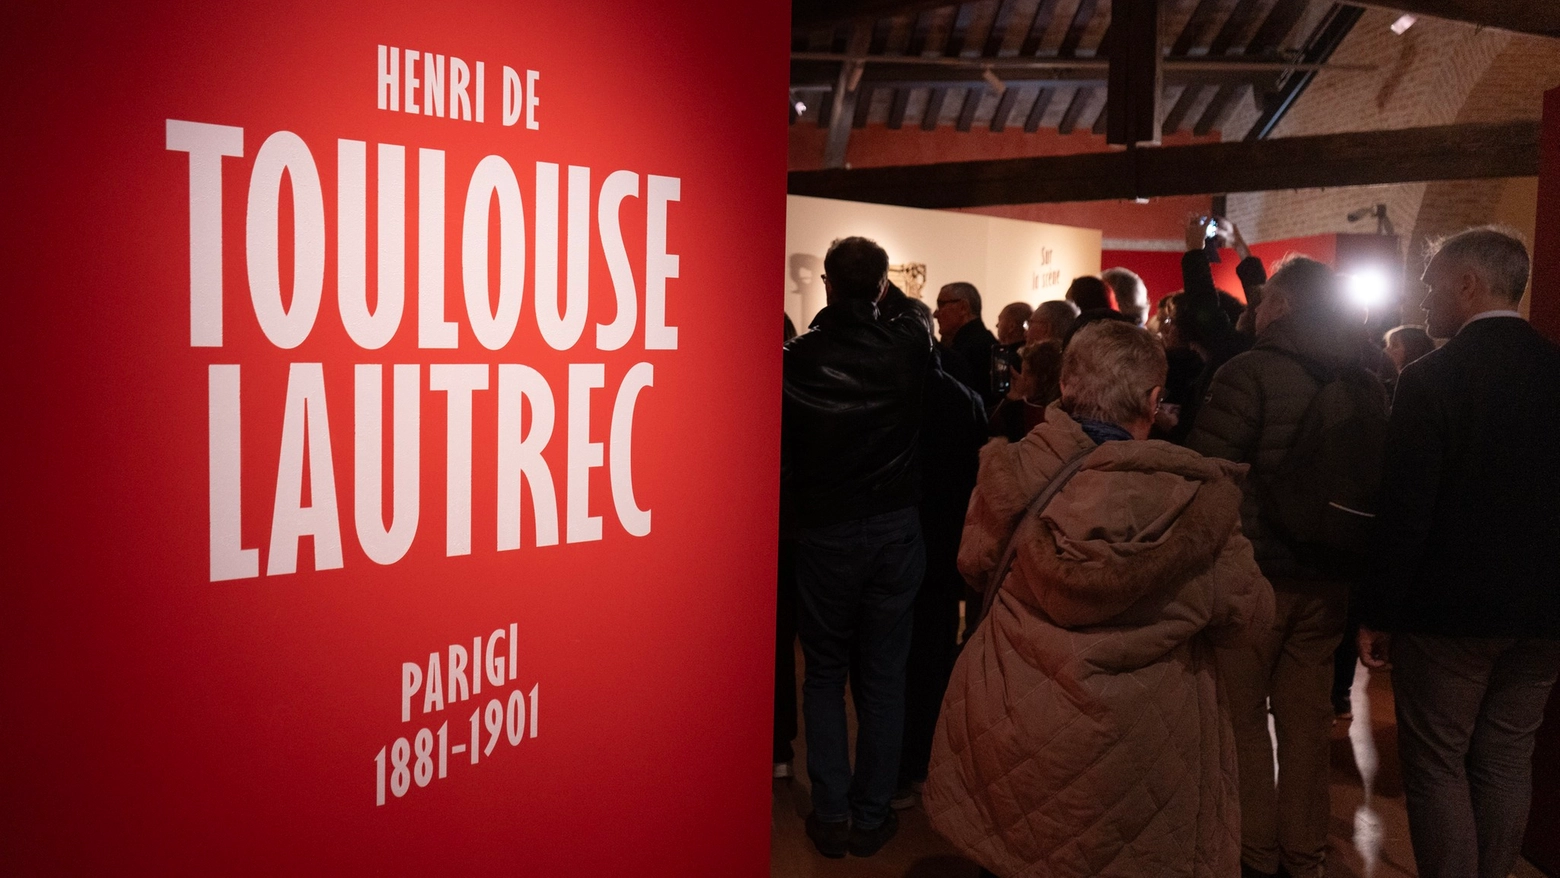 Rimarrà aperta fino al 30 giugno l’esposizione ‘Henri de Toulouse-Lautrec. Parigi 1881-1901’ di Palazzo Roverella. “Un’occasione inedita per immergersi tra le strade di Montmartre”